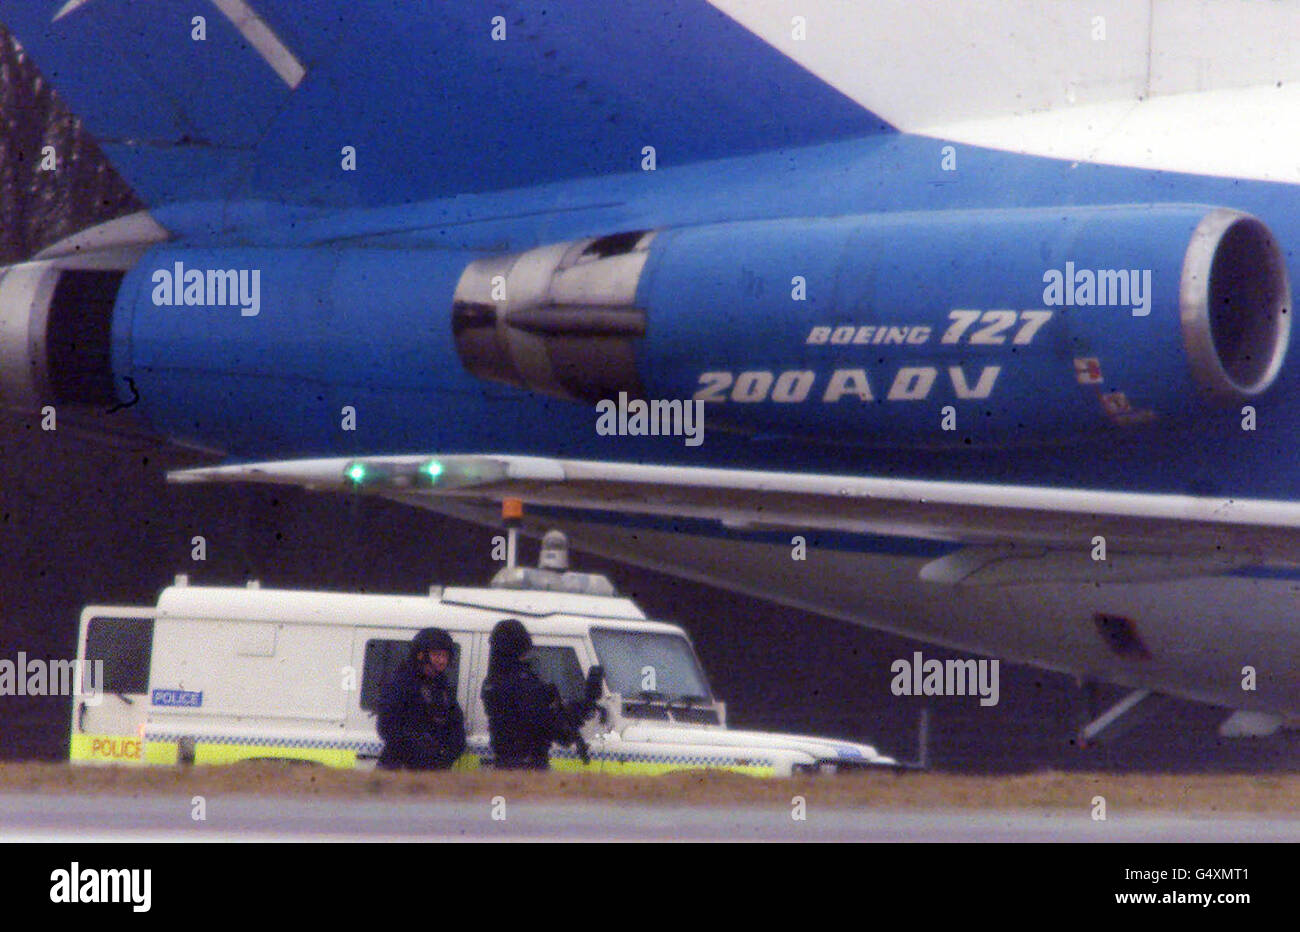 Il dirottato Ariana Airlines Boeing 727 circondato da veicoli di fornitura che effettuano consegne, all'aeroporto di Stansted, dove circa 150 persone, tra cui 21 bambini, sono detenuti da 10 dirottatori che hanno preso il controllo del jet. *.. Su un volo interno in Afghanistan. Foto Stock